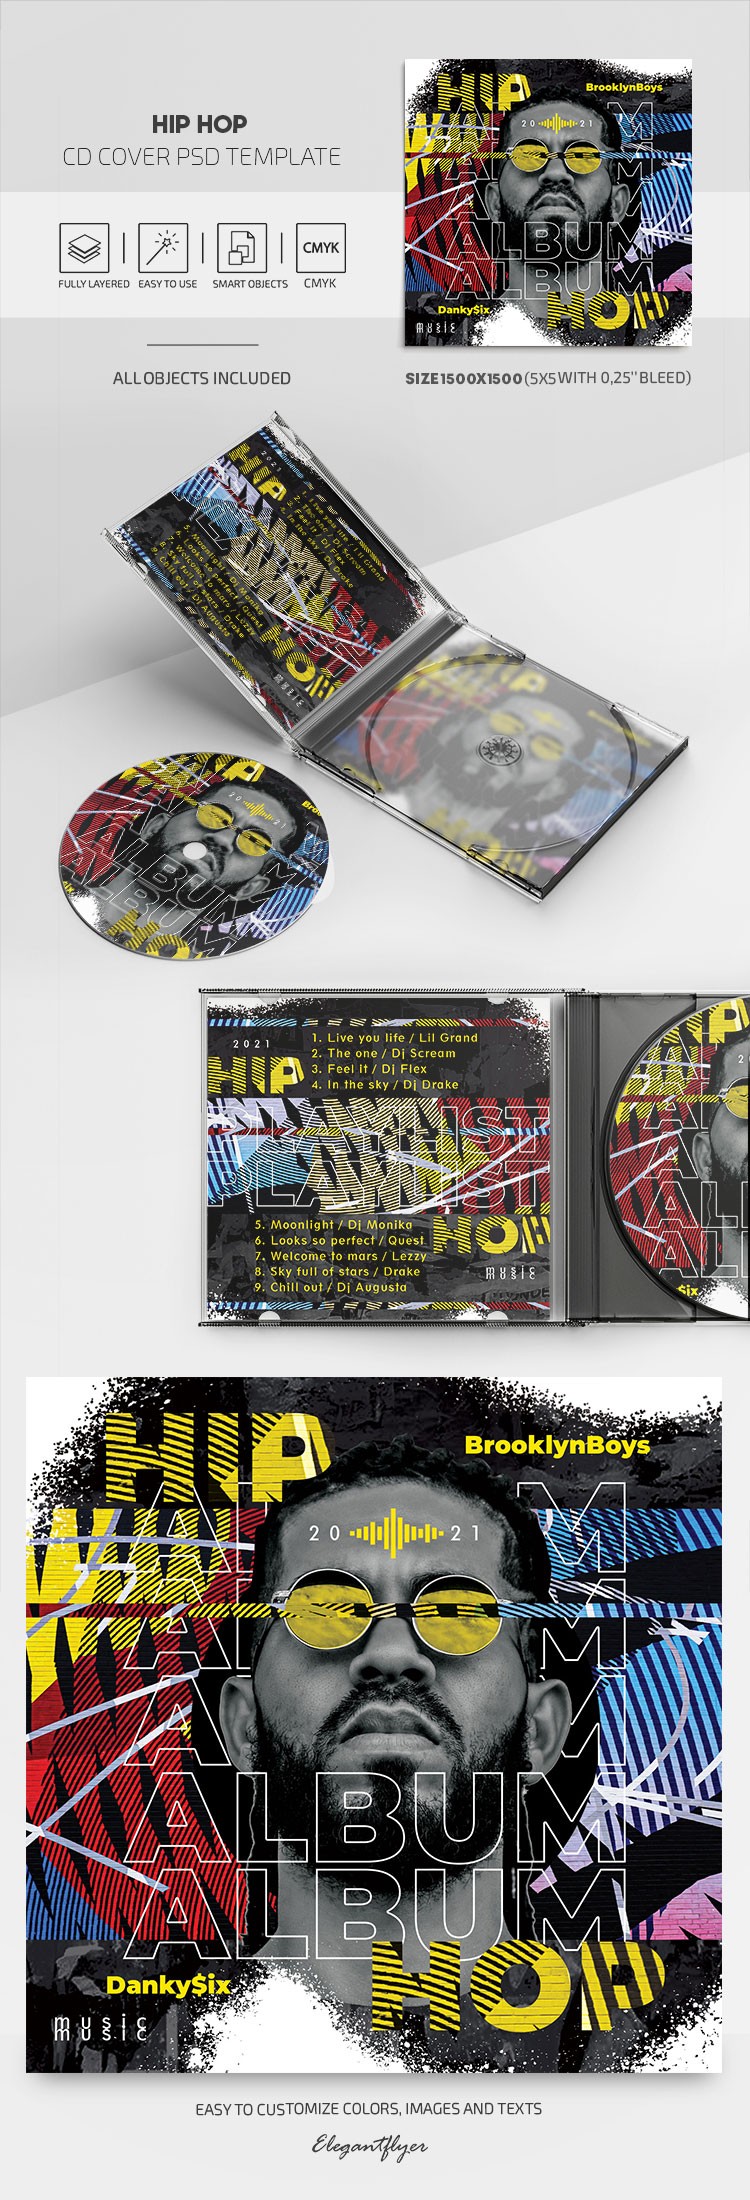 Couverture de CD de Hip Hop by ElegantFlyer